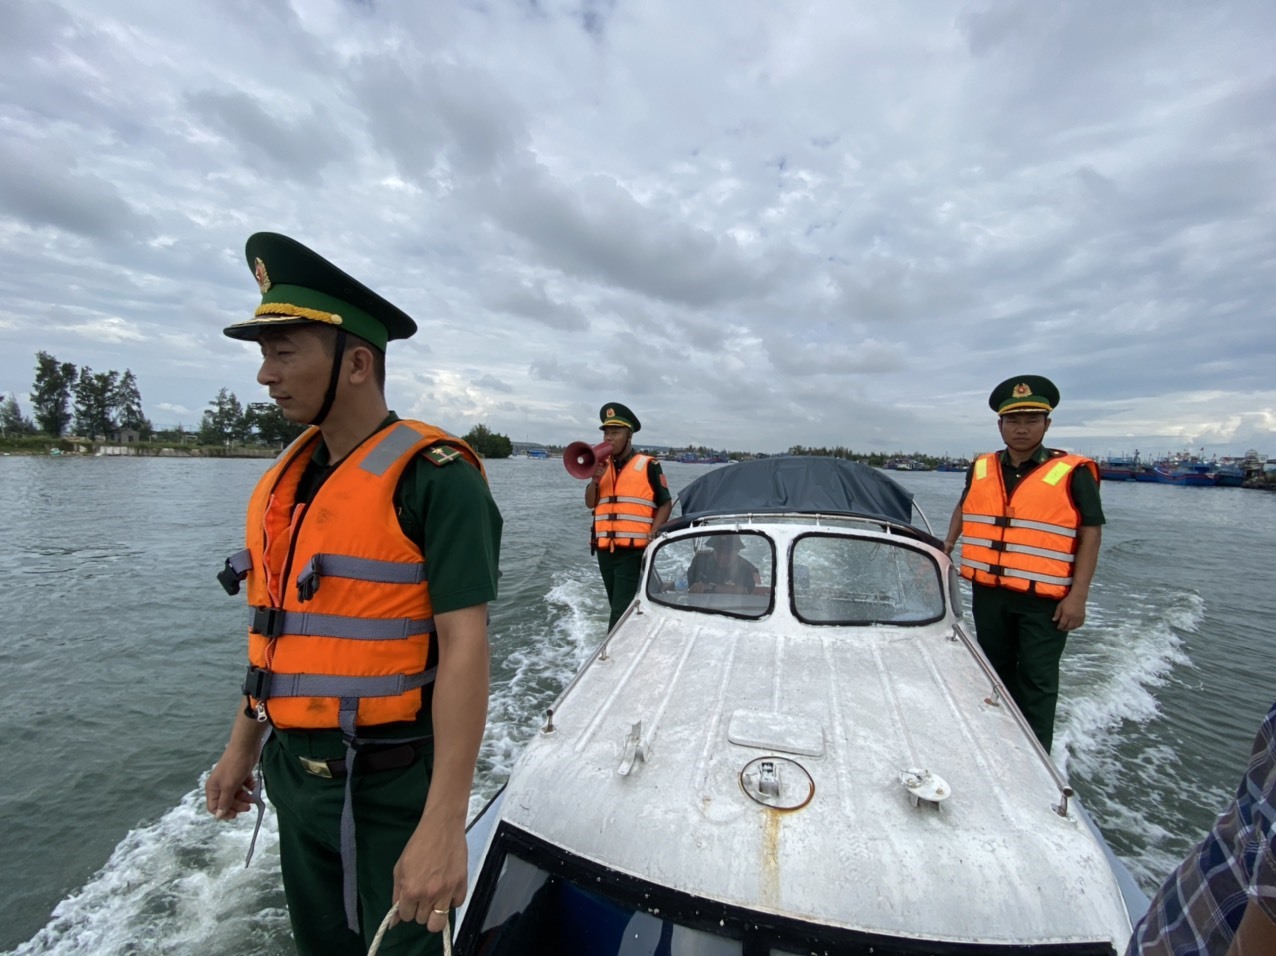 Bộ đội biên phòng Quảng Ngãi khẩn trương triển khai công tác phòng chống bão Noru, sắp xếp, neo cột tàu thuyền và kêu ngư dân tìm nơi trú tránh an toàn.